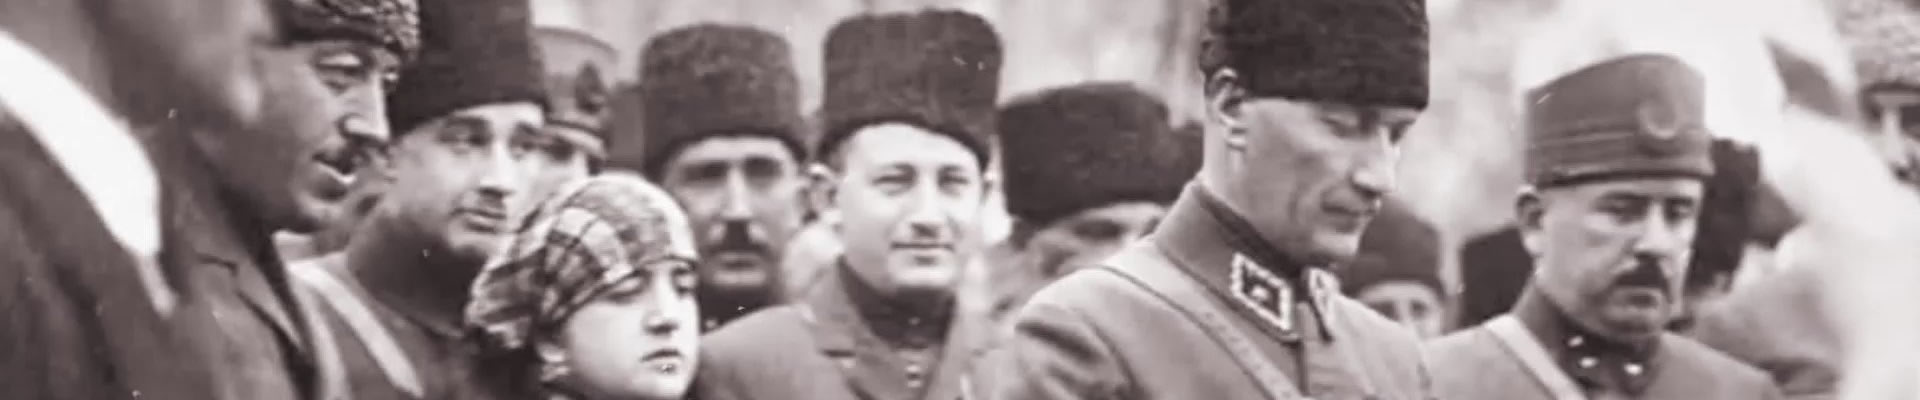 Gizli Belgelerde Mustafa Kemal,Vahdettin ve Kurtuluş Savaşı